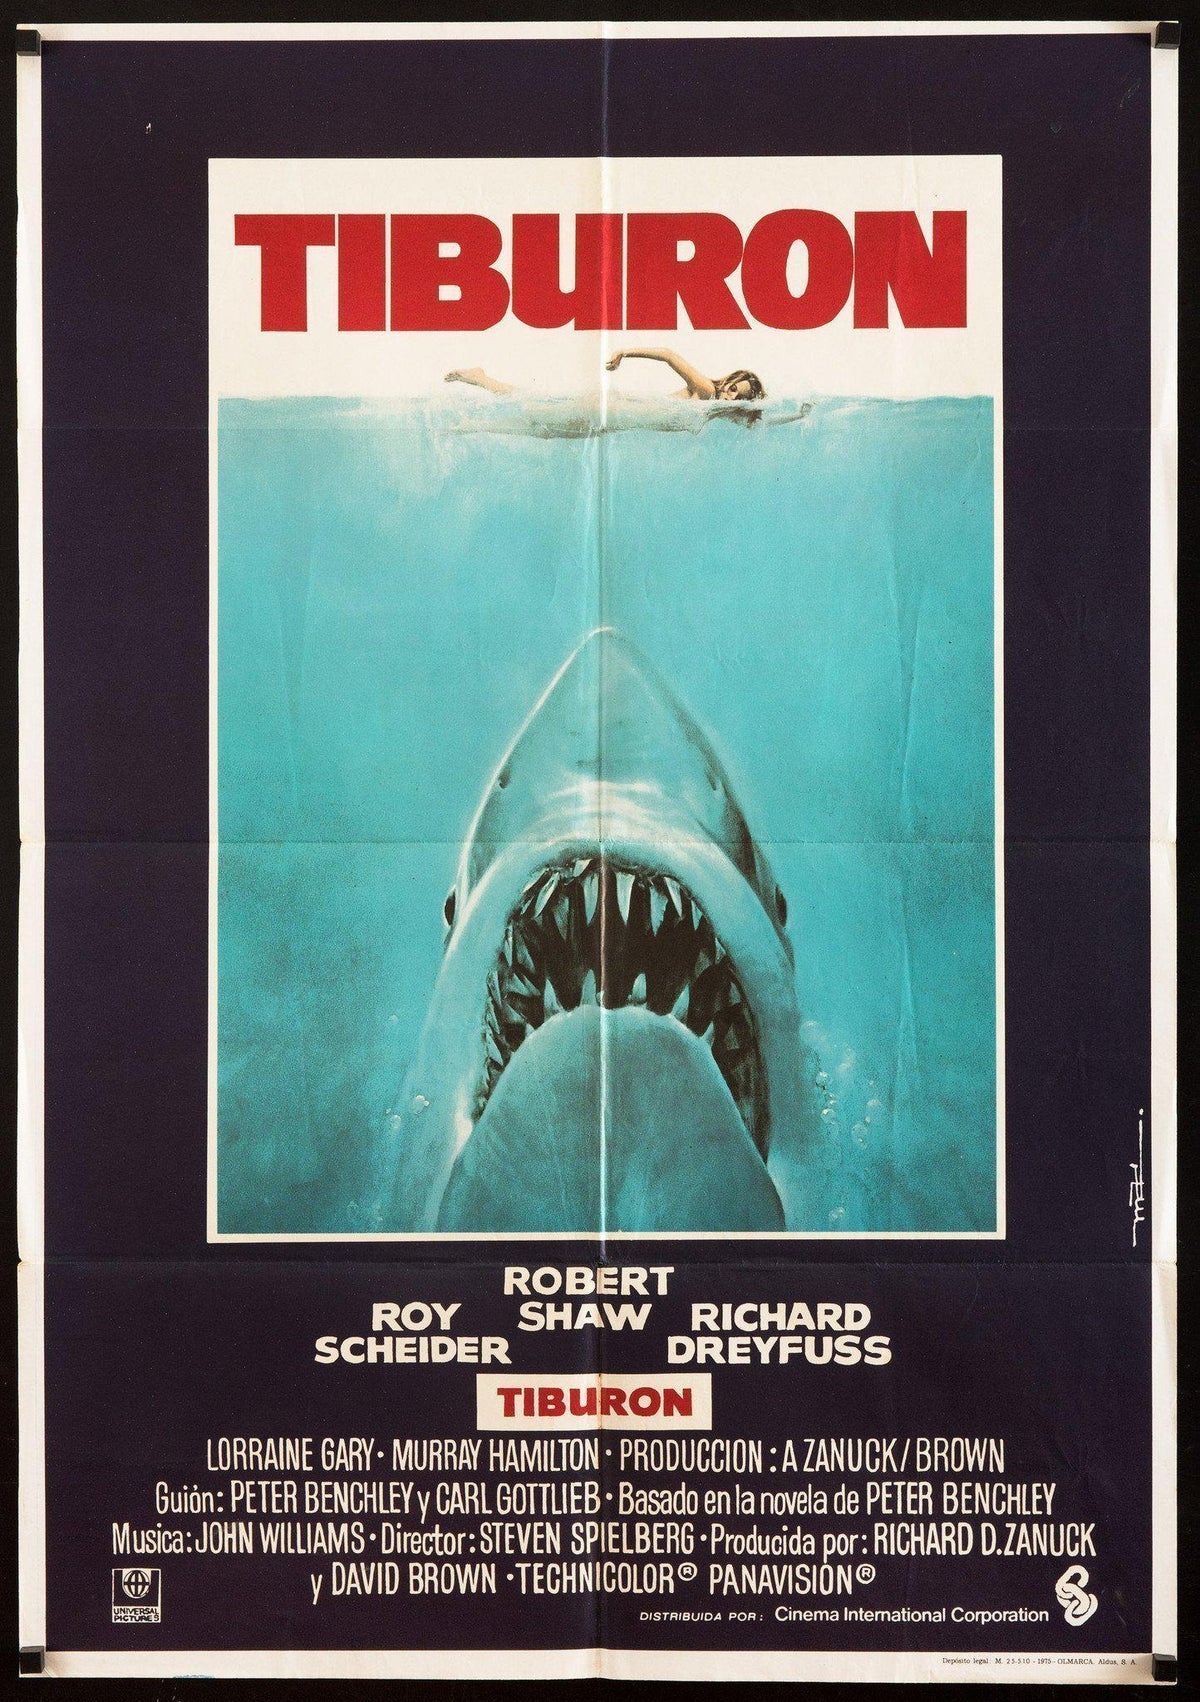 Jaws (Tiburon) 1 Sheet (27x41) Original Vintage Movie Poster